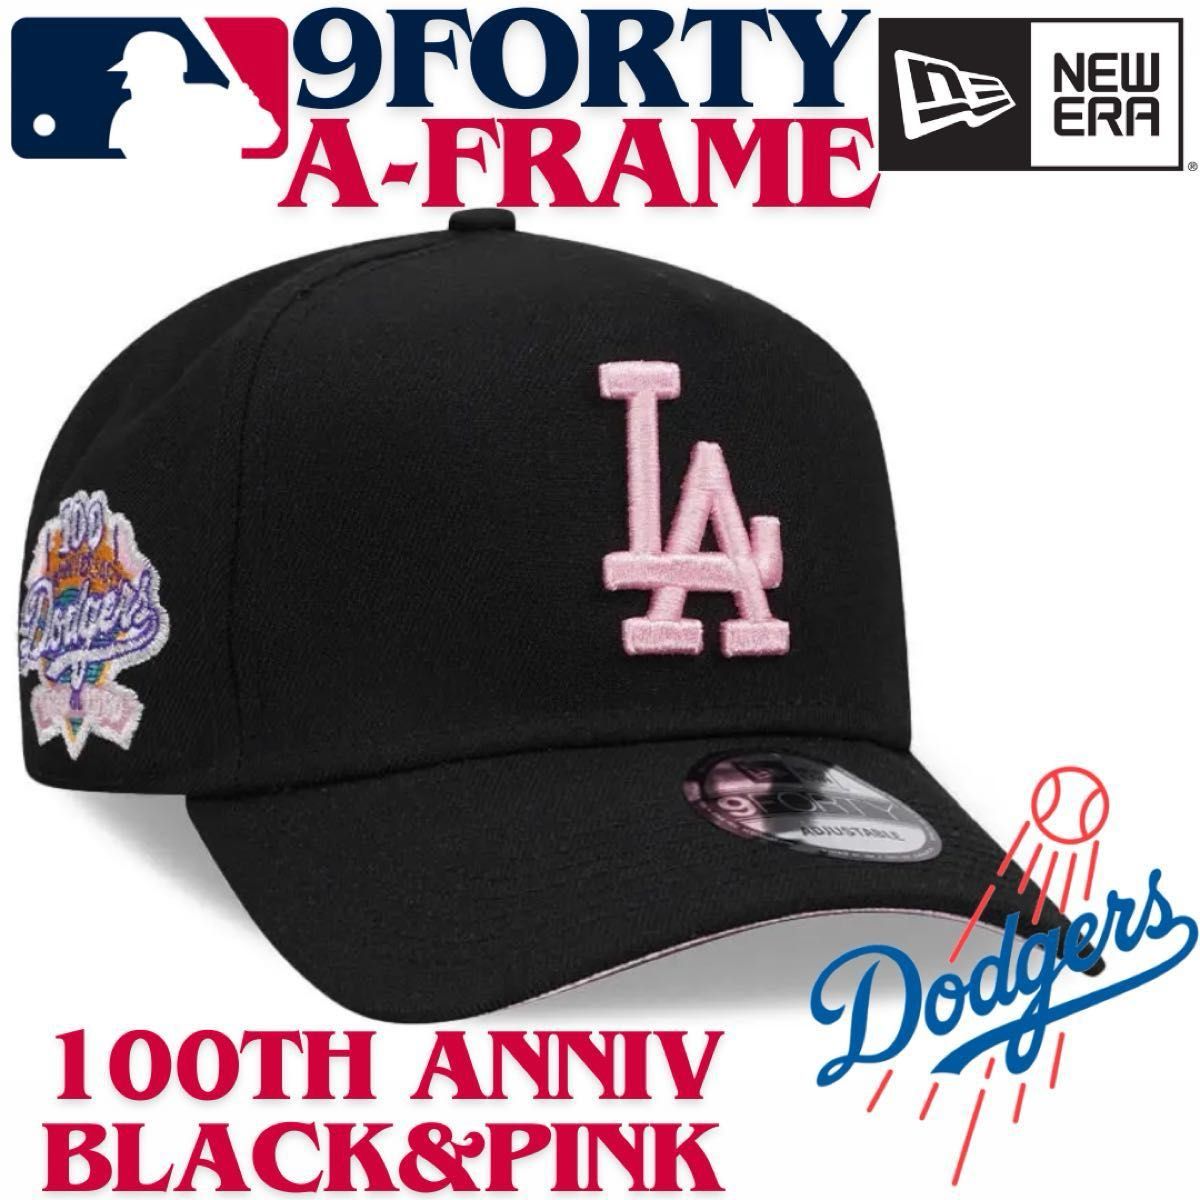 【海外限定】ニューエラ ロサンゼルスドジャース 9FORTY Aフレーム ピンク new era Dodgers pink